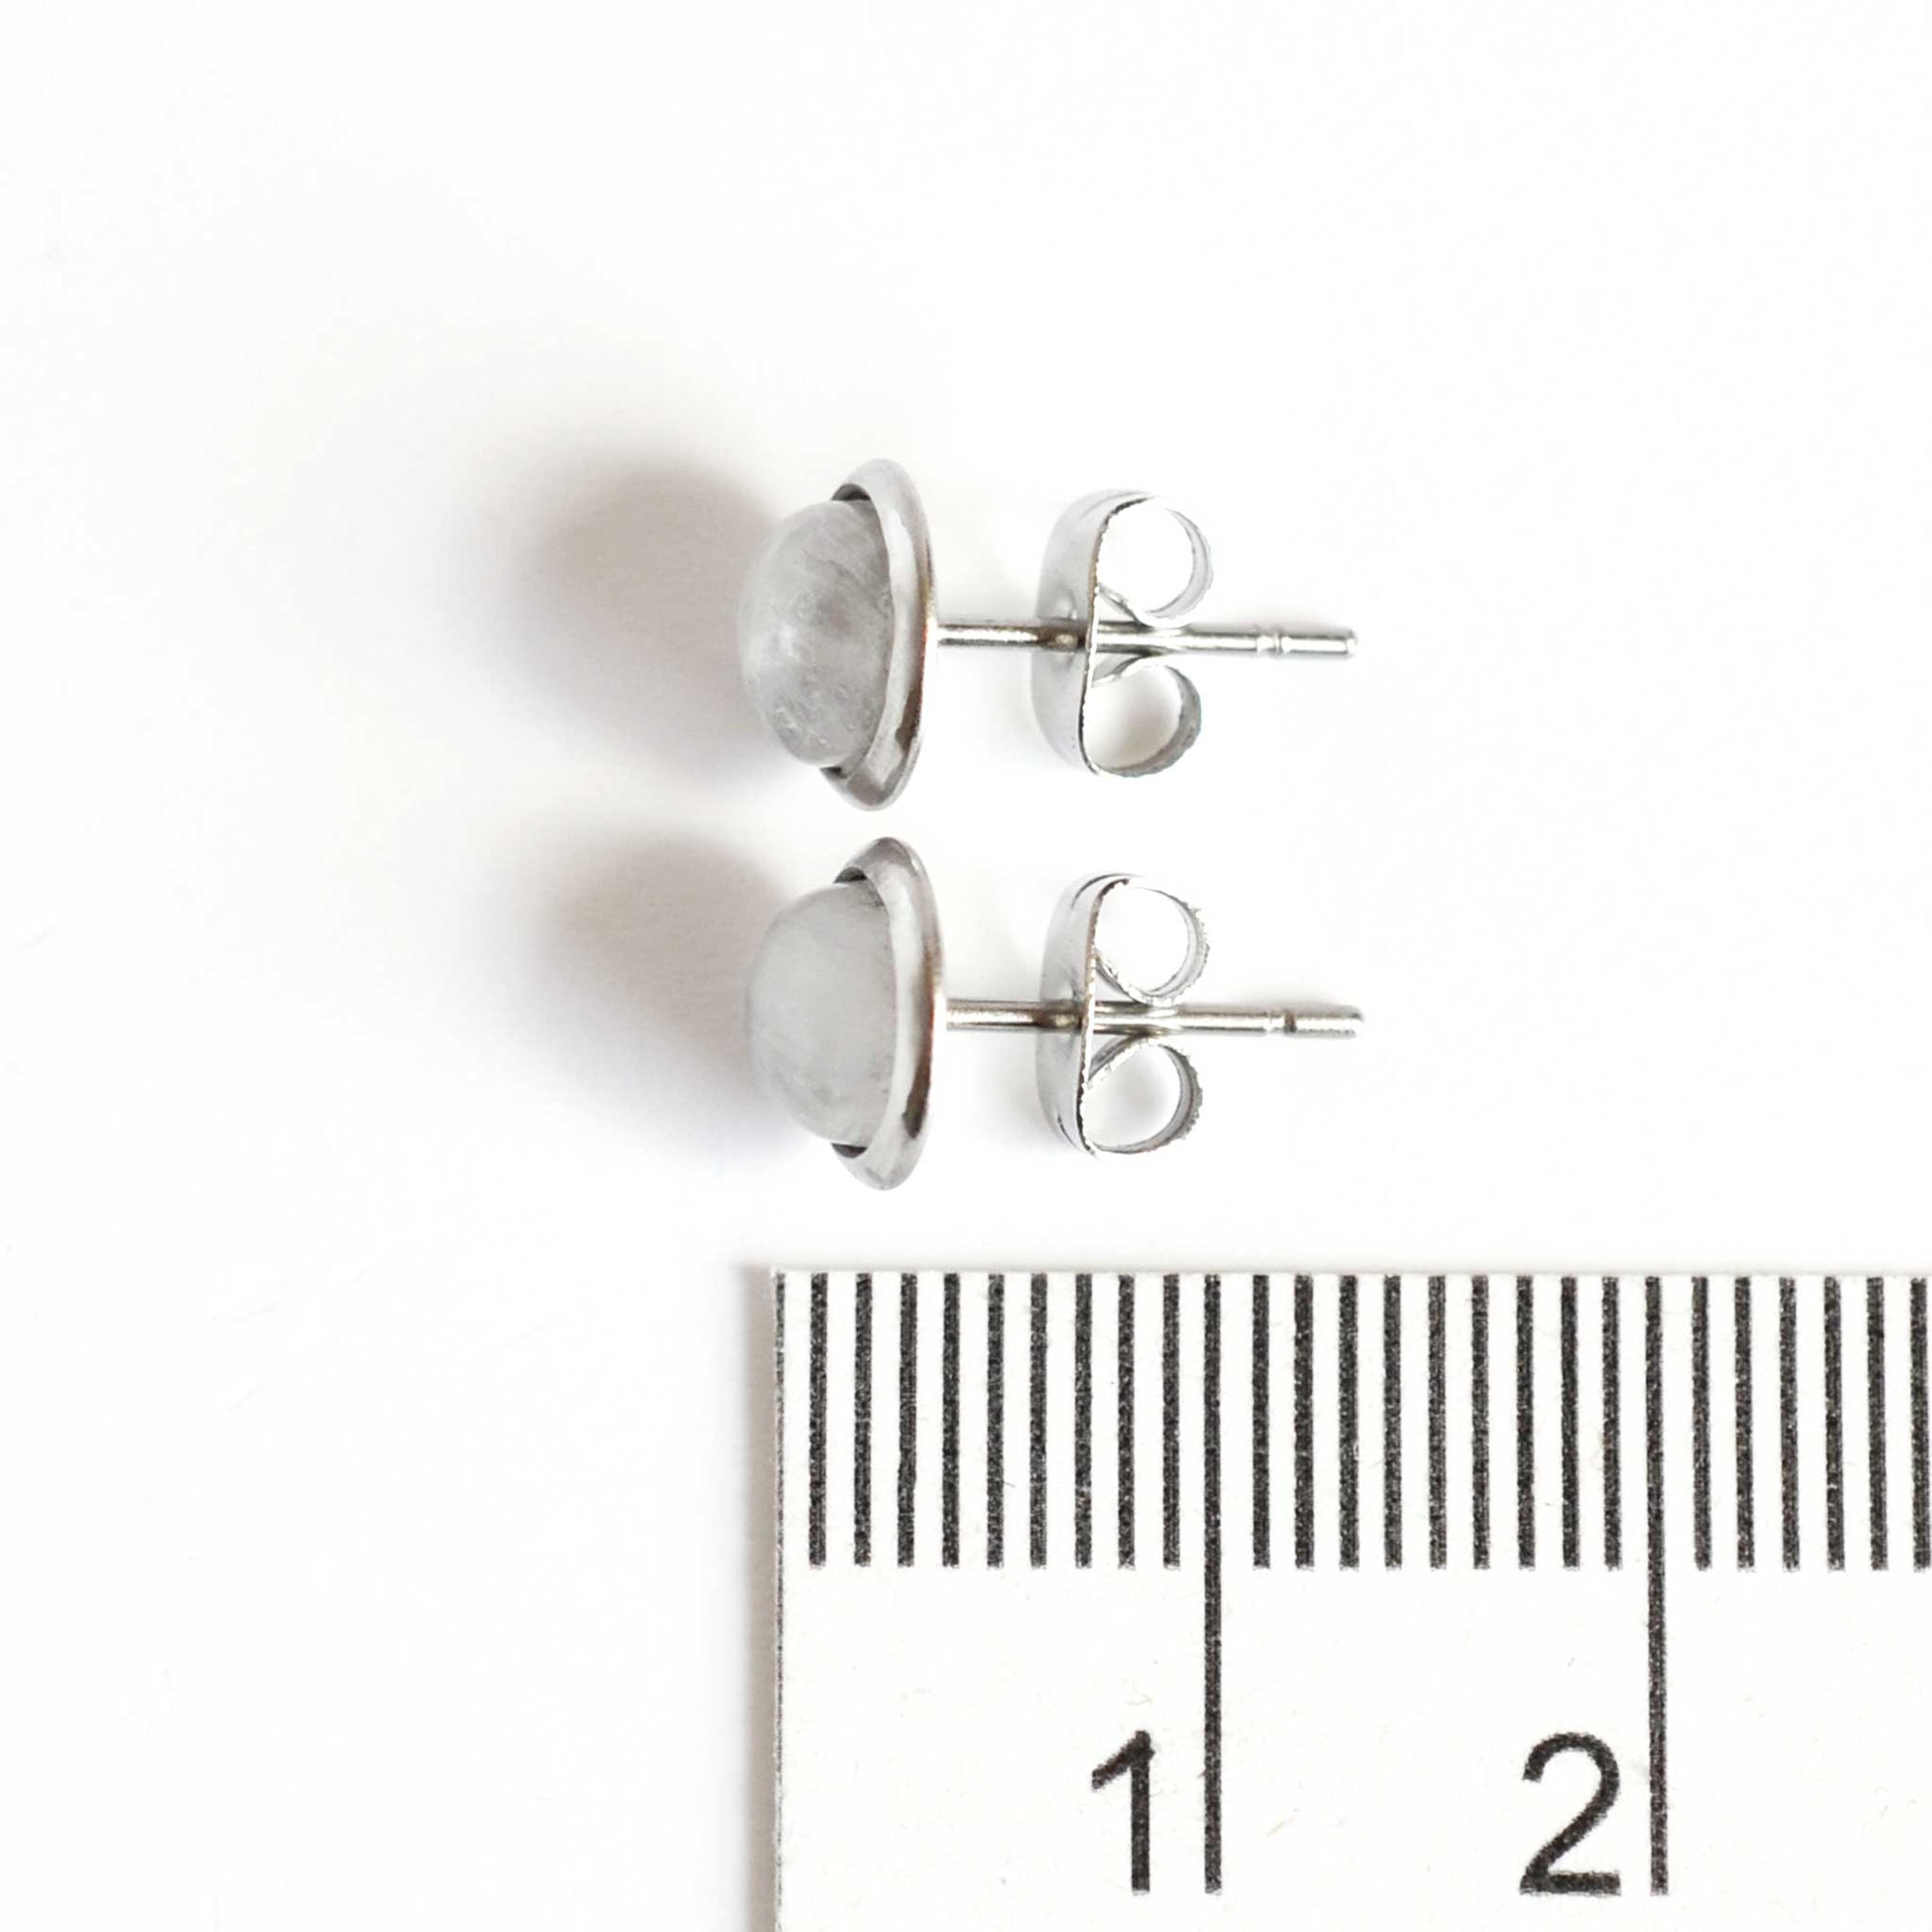 8mm diameter Rainbow Moonstone stud earrings next to ruler